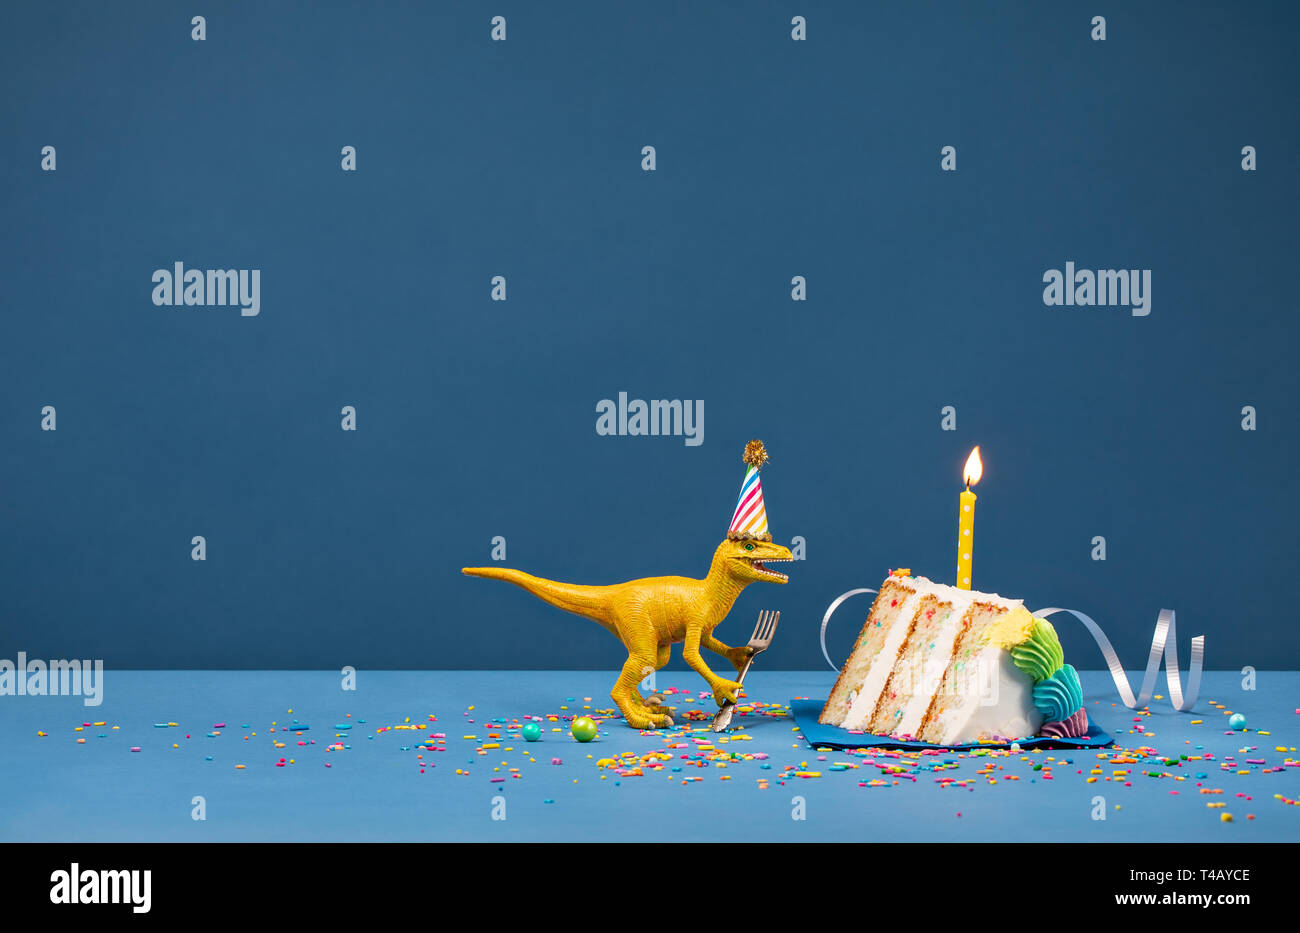 Spielzeug Dinosaurier Holding eine Gabel und Ausblasen Geburtstag Kerze auf einem blauen Hintergrund Stockfoto